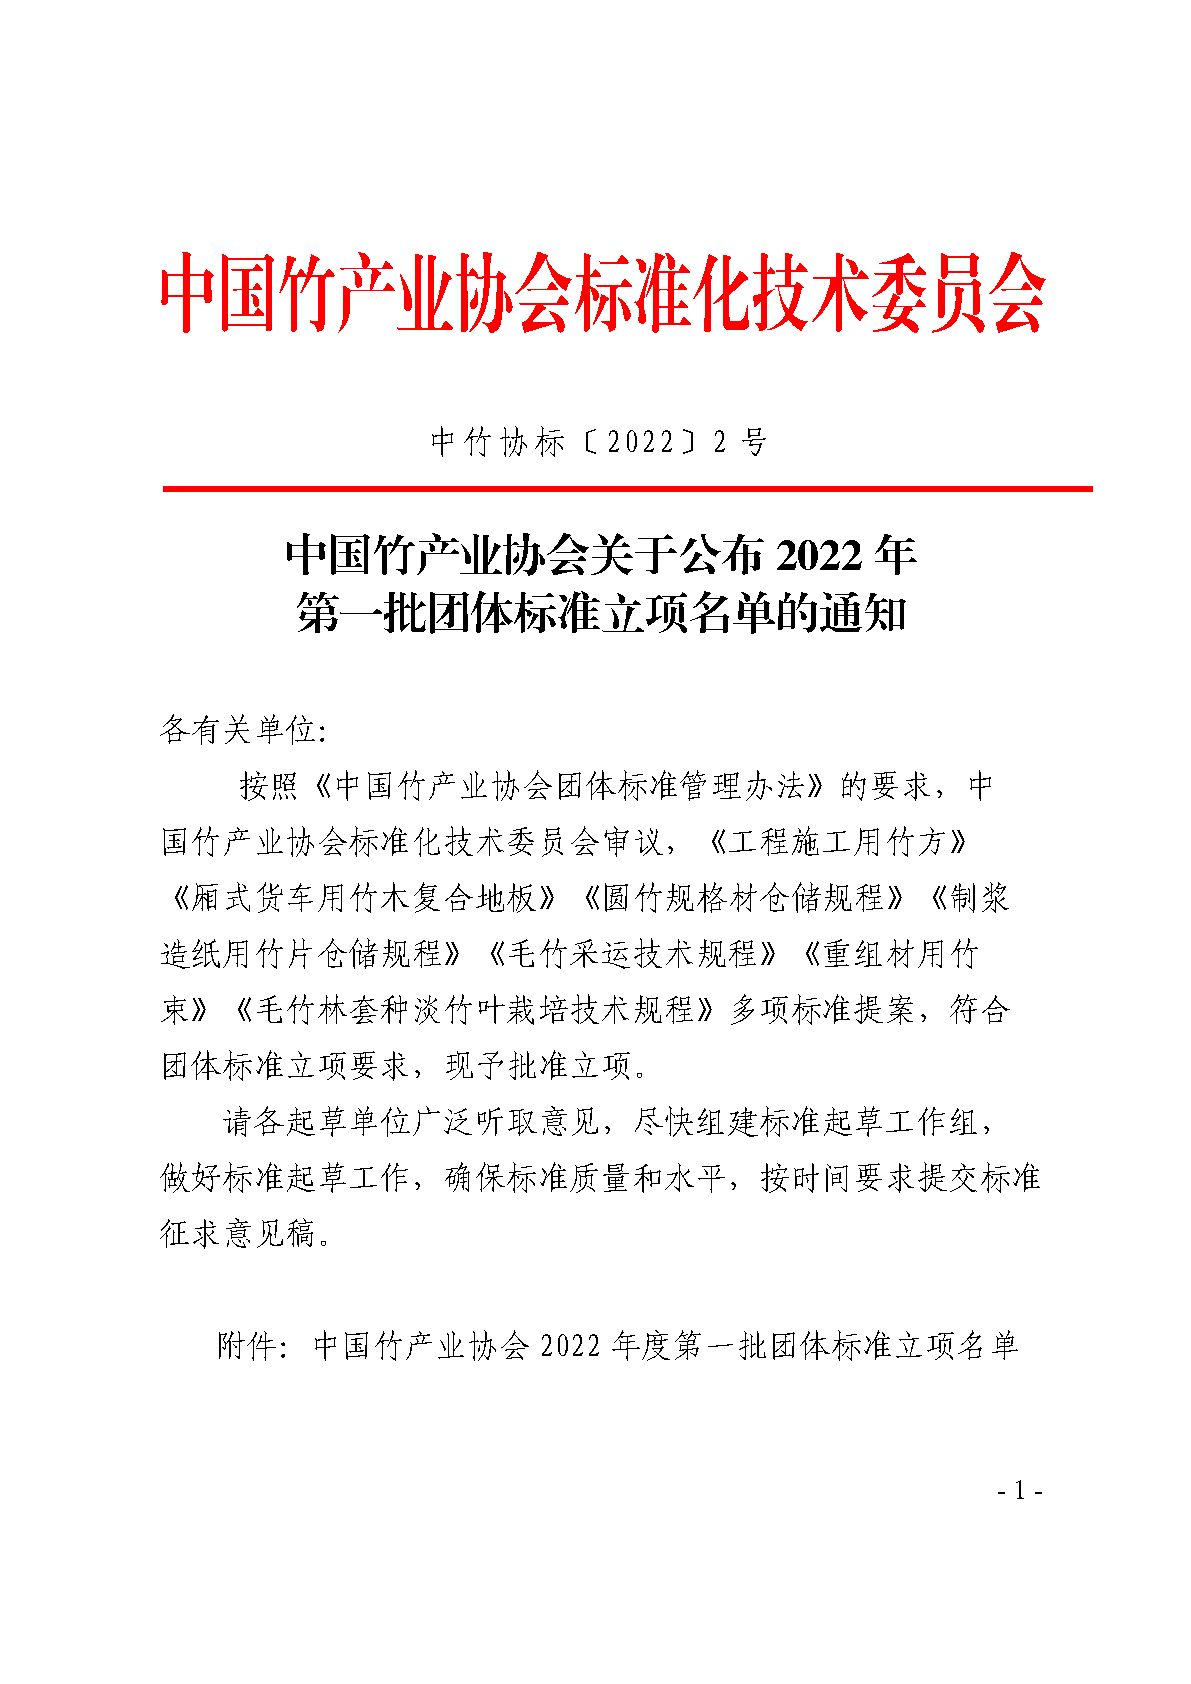 中国竹产业协会关于公布2022年度第一批团体标准立项名单的通知_Page1.png